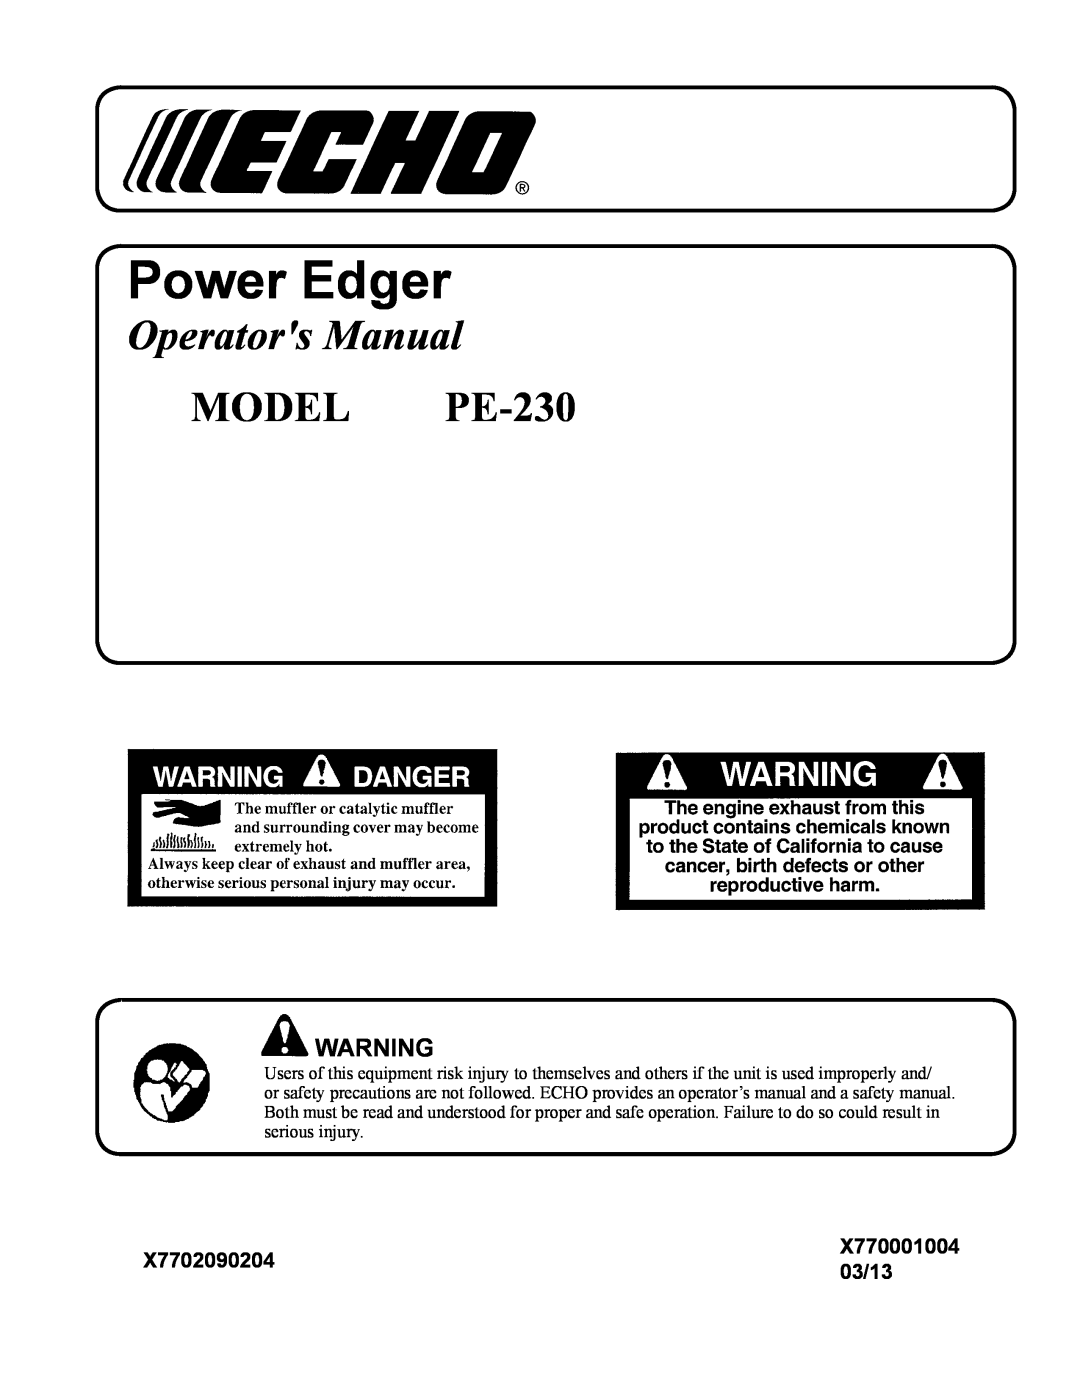 Echo manual X7702090204, 03/13, Power Edger, Operators Manual, MODEL PE-230, X770001004 